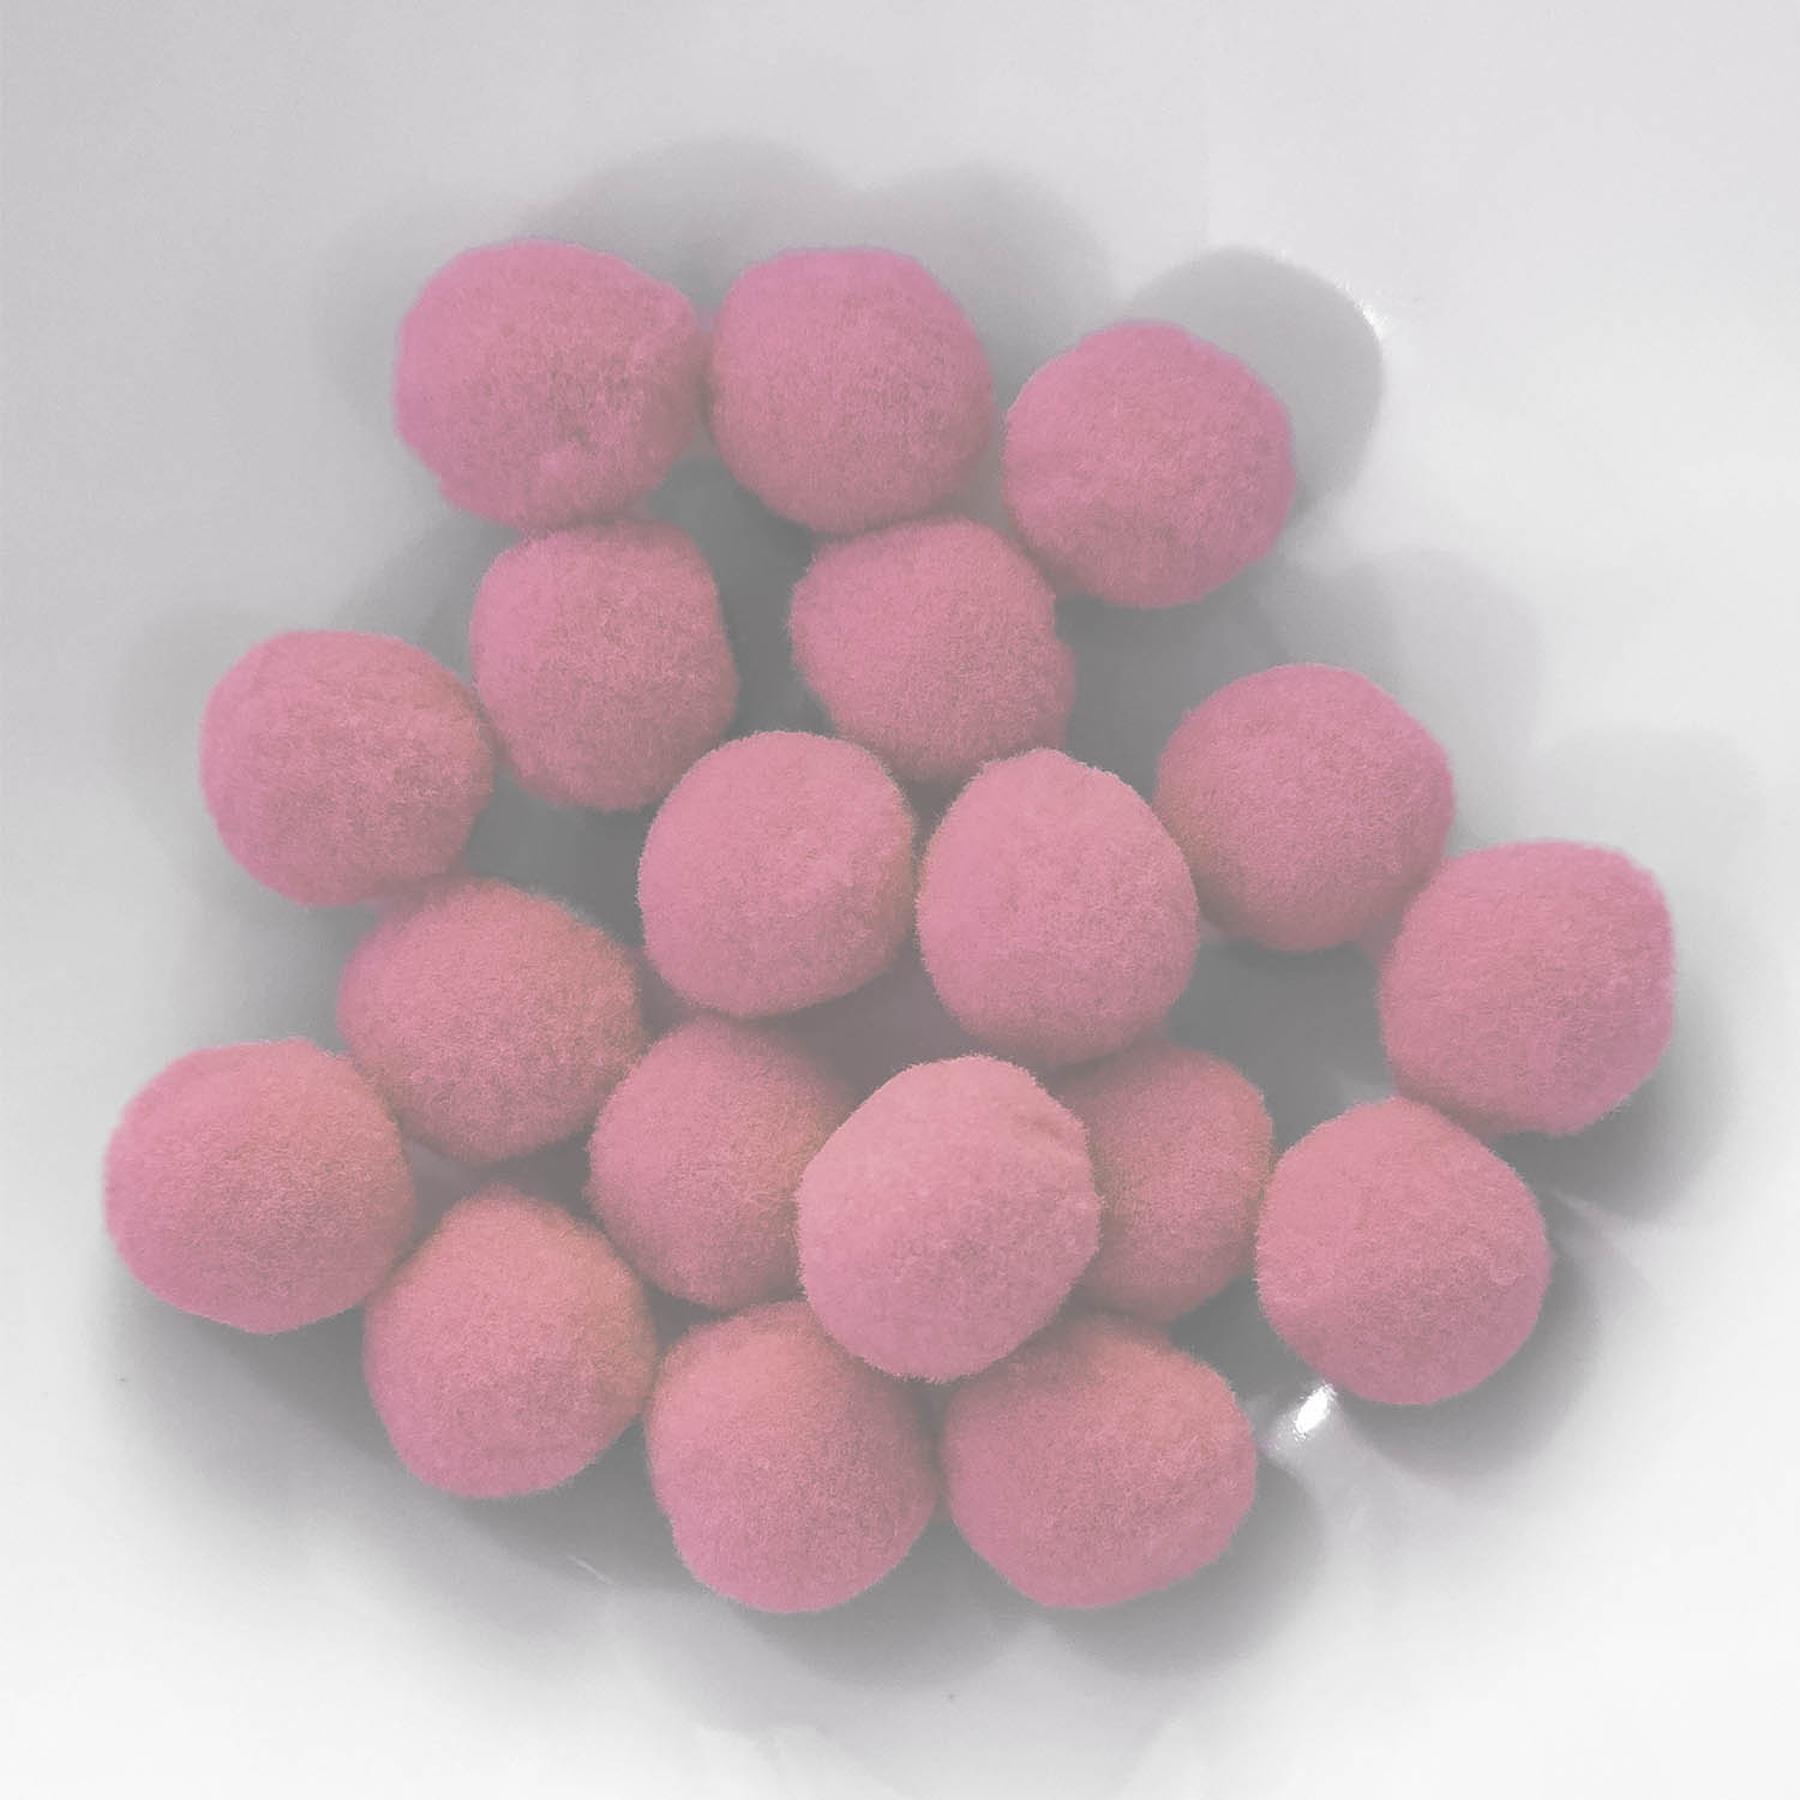 PomPon / Bälle aus Baumwolle - 12 mm / 40er Set - Pink hell